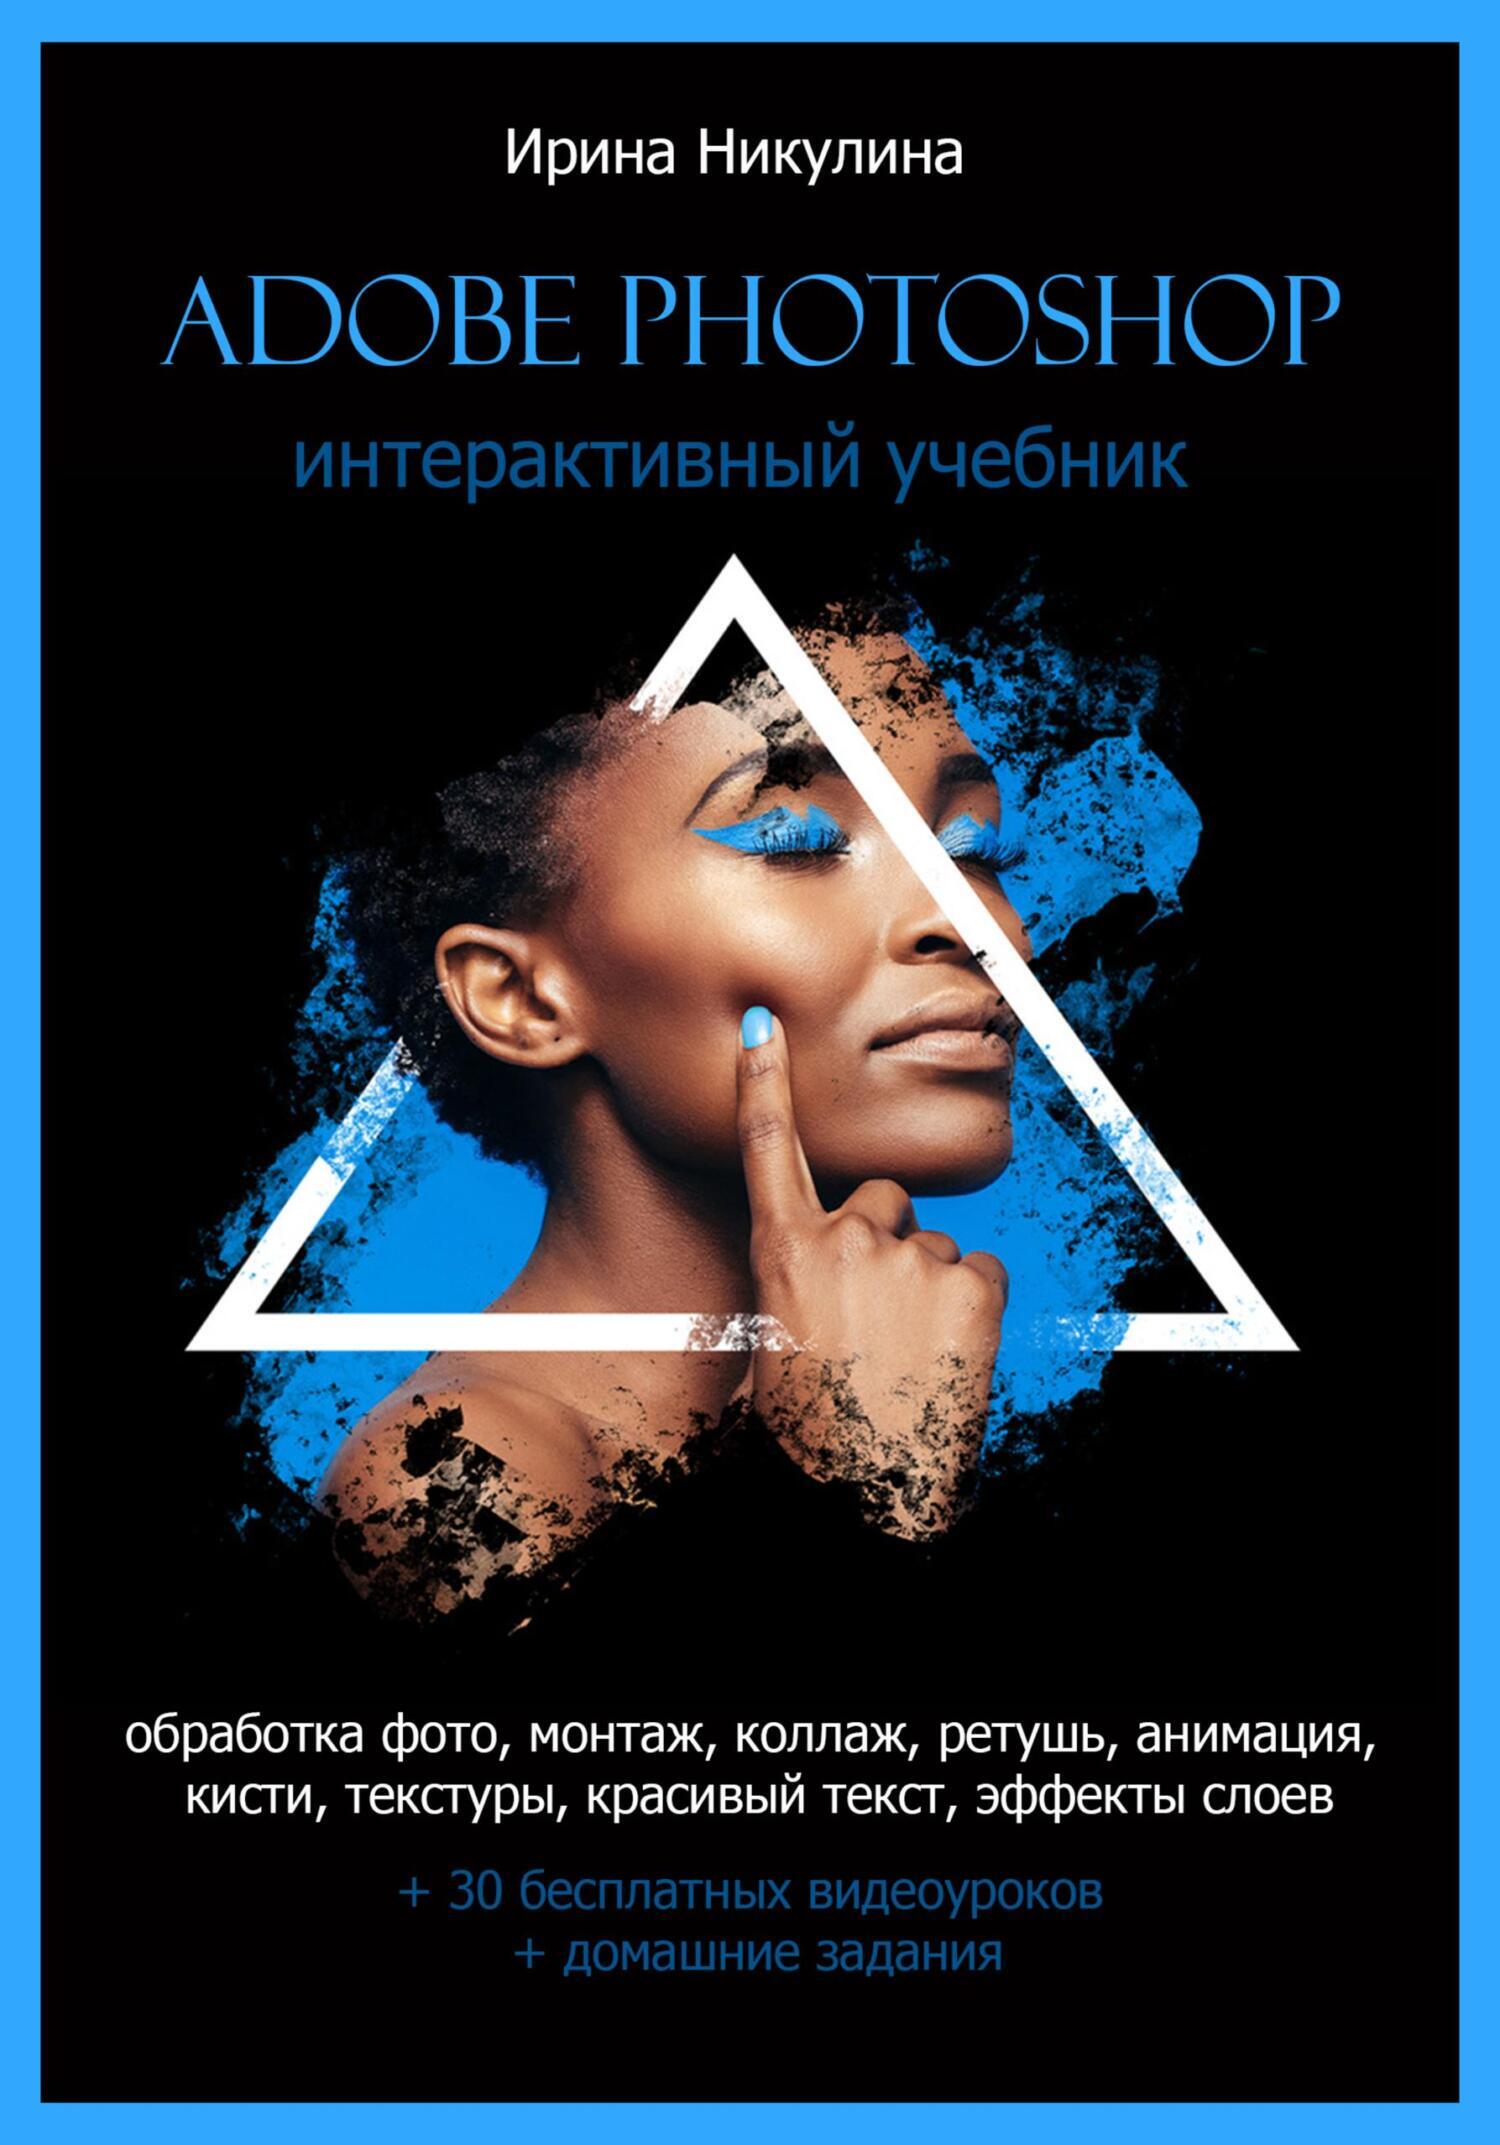 Курс по Adobe Photoshop в веб-дизайне и графическом оформлении - Все Курсы Бай